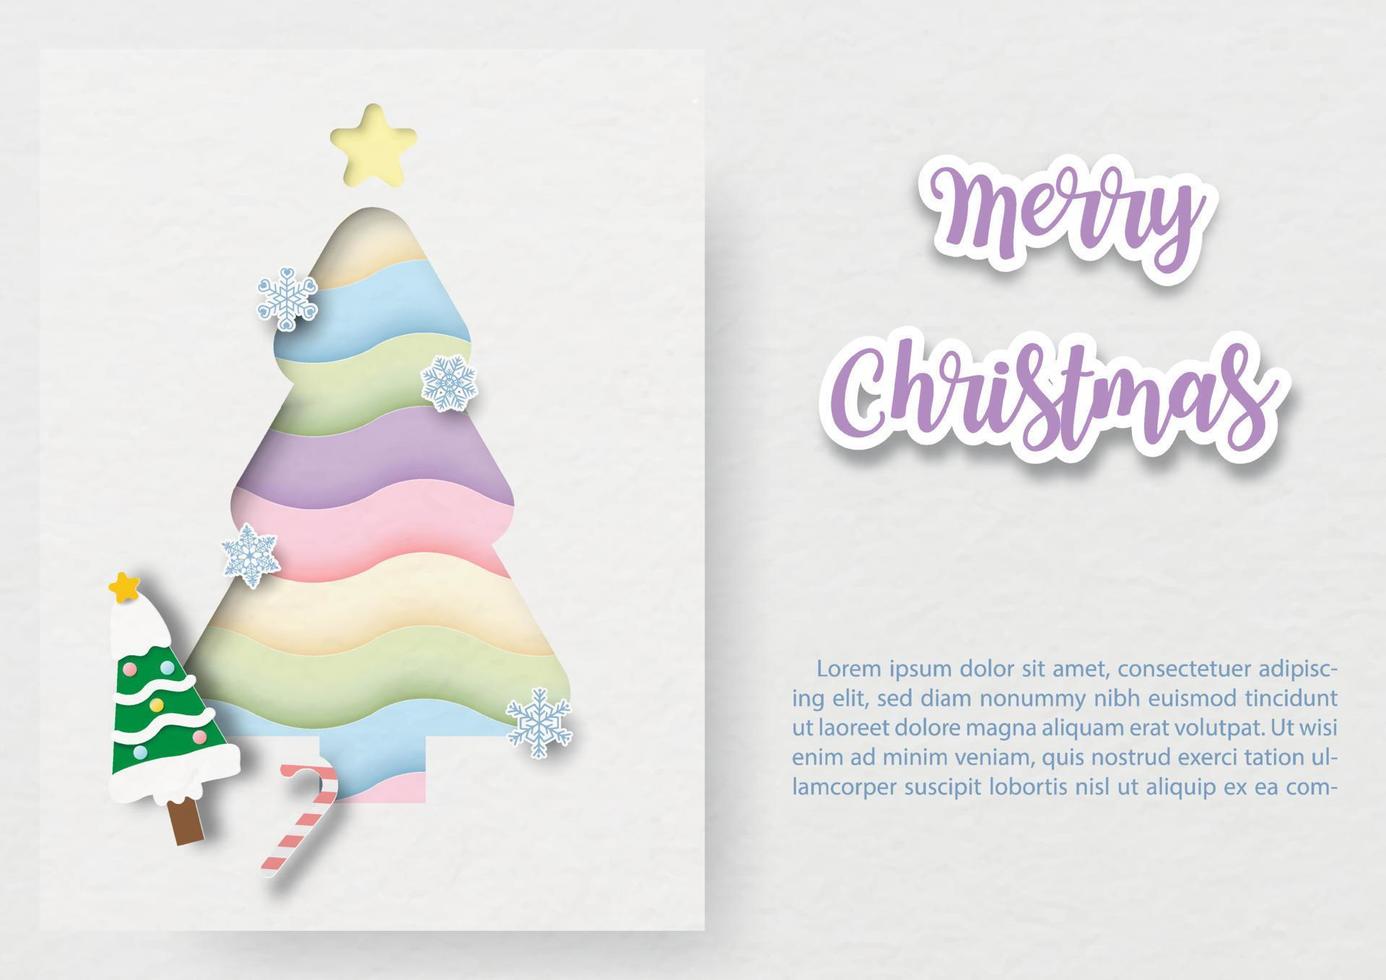 lindo y fantástico árbol de navidad del arco iris en estilo de corte de papel en tarjeta blanca con textos de ejemplo y letras de feliz navidad en el fondo del patrón de papel blanco. vector